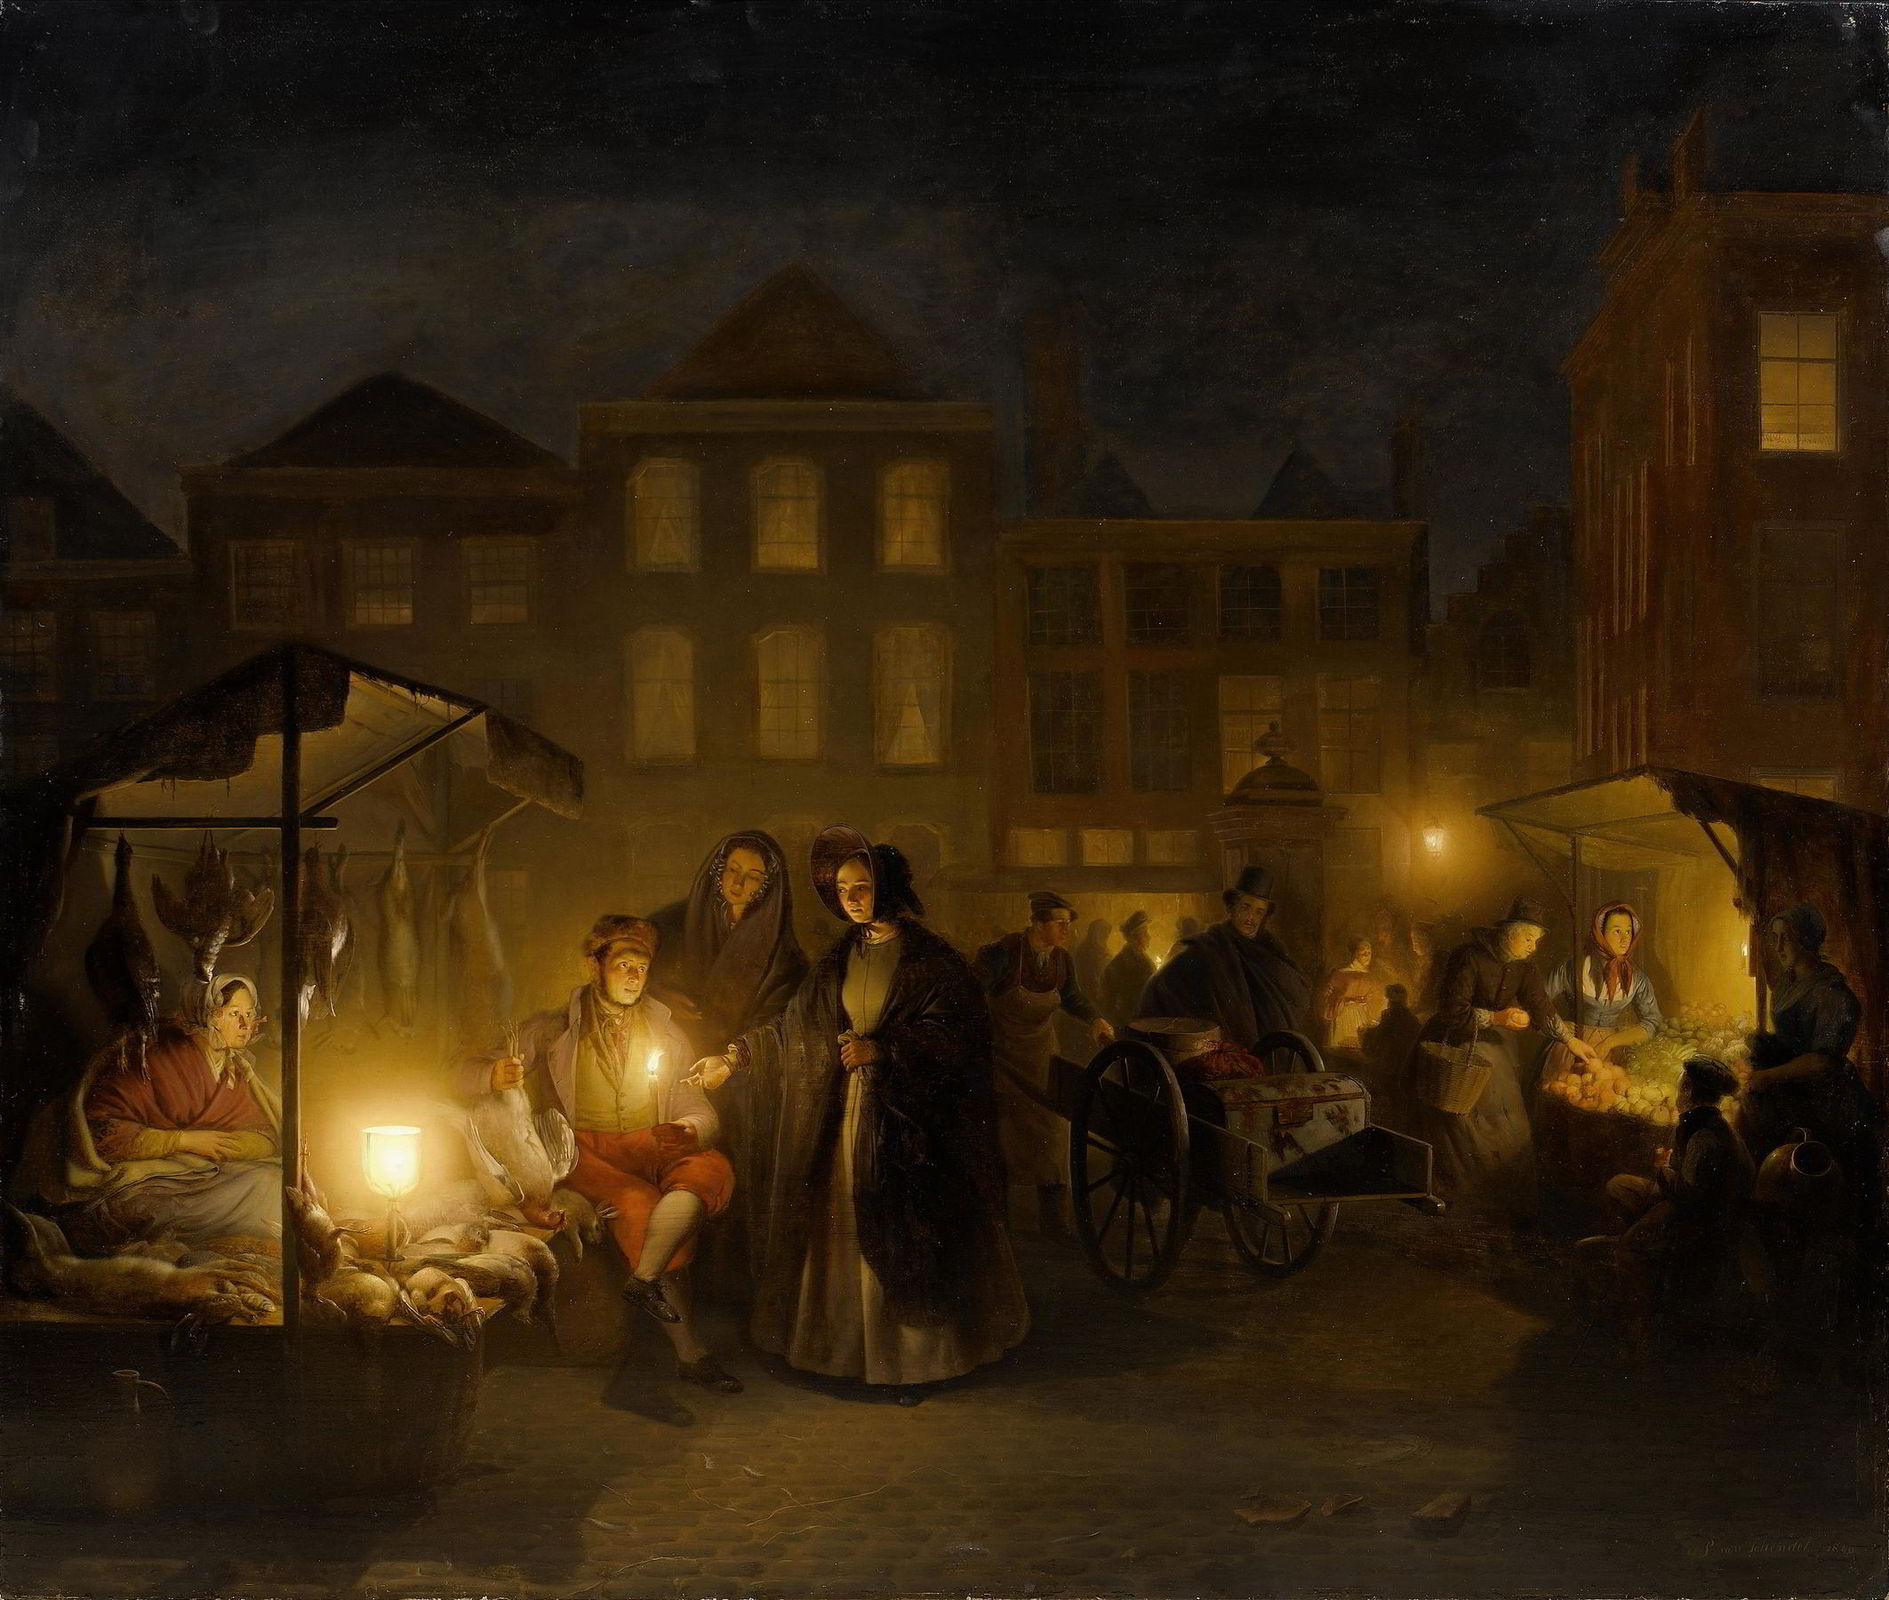 The Evening Market by Petrus Van Schendel